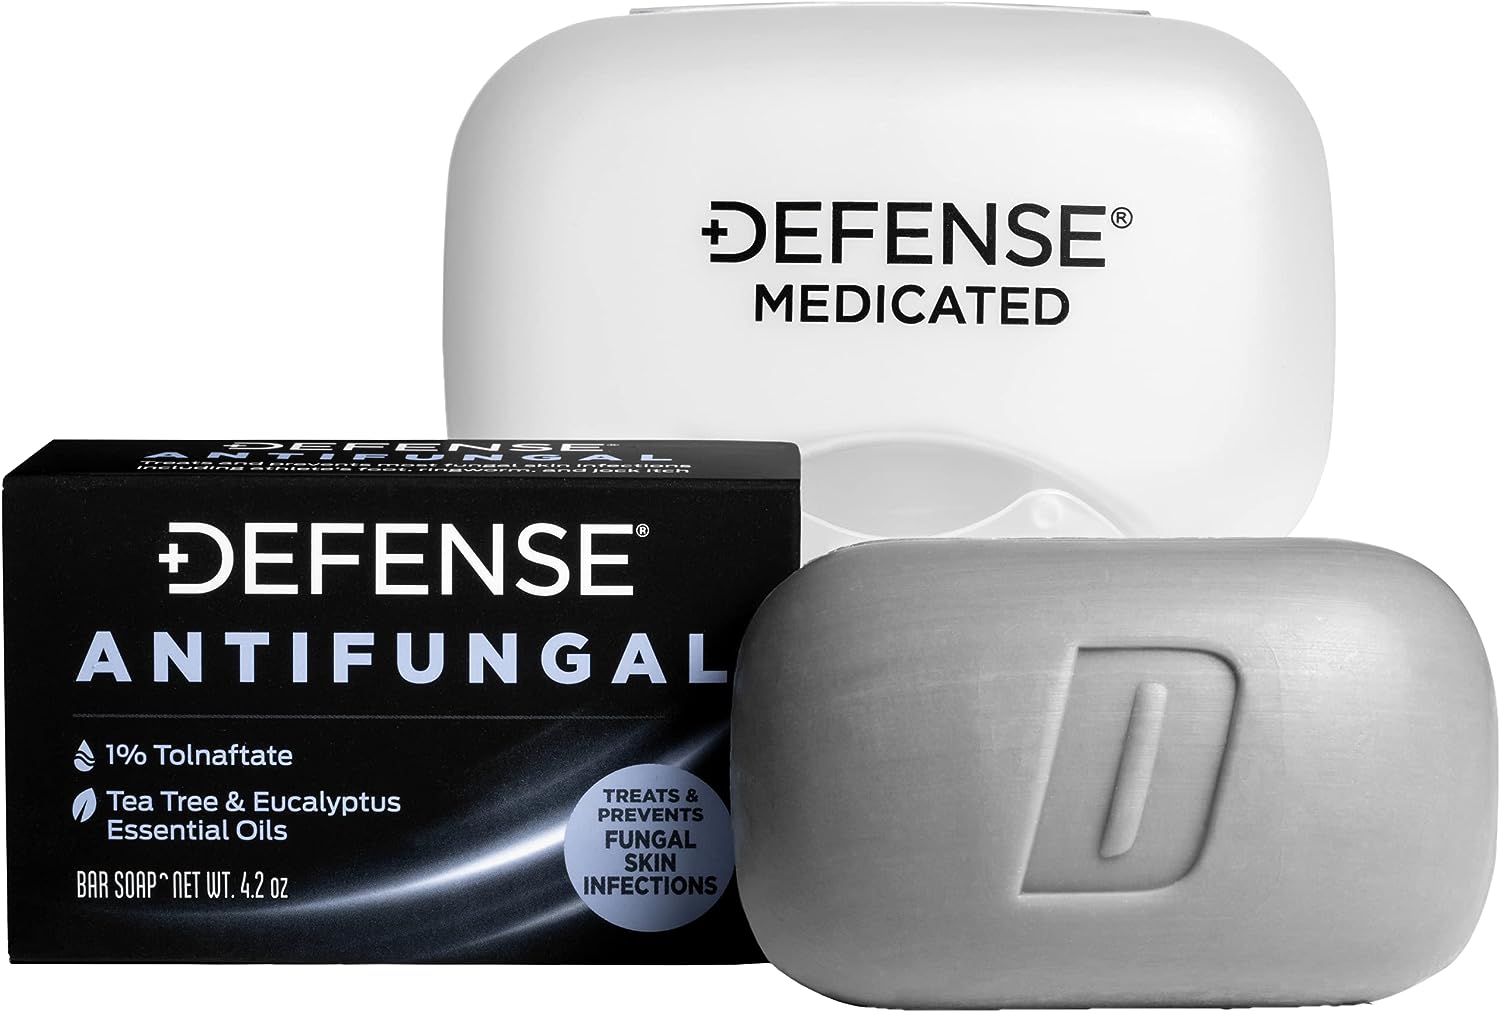 Defense Antifungal Medicated Bar Soap | Intensive [...]